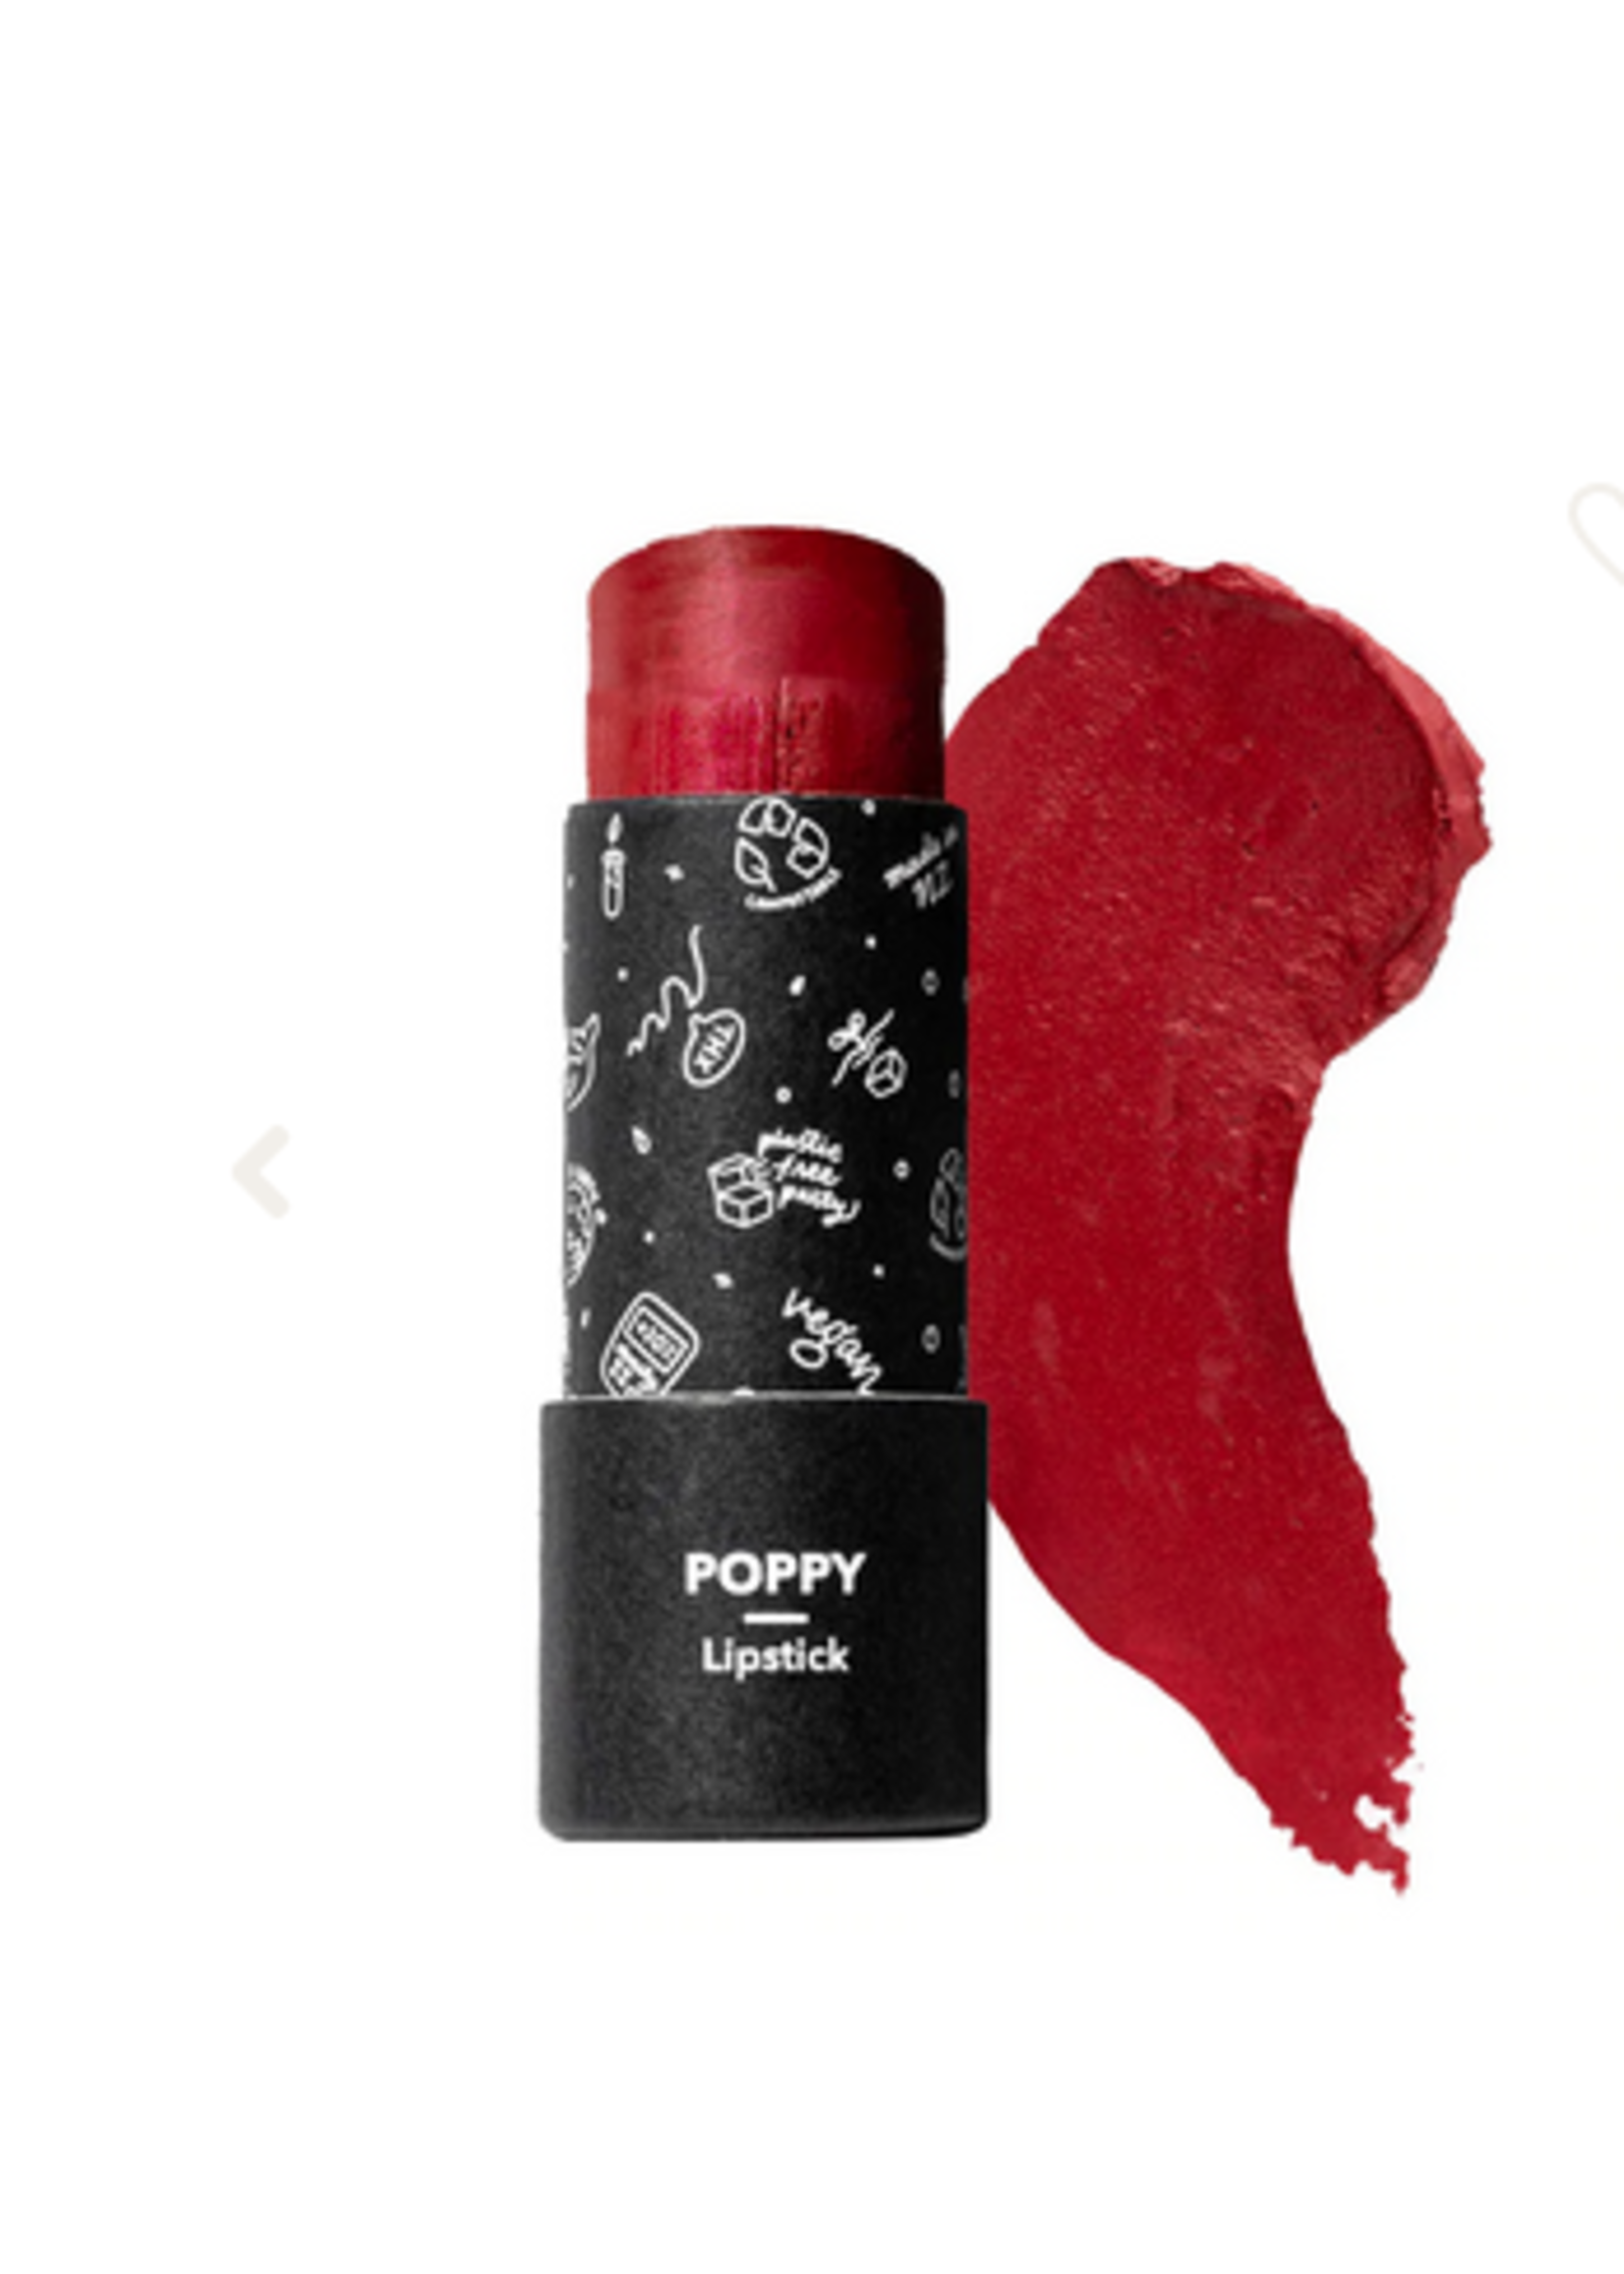 Ethique Ethique Lipstick Poppy 8g